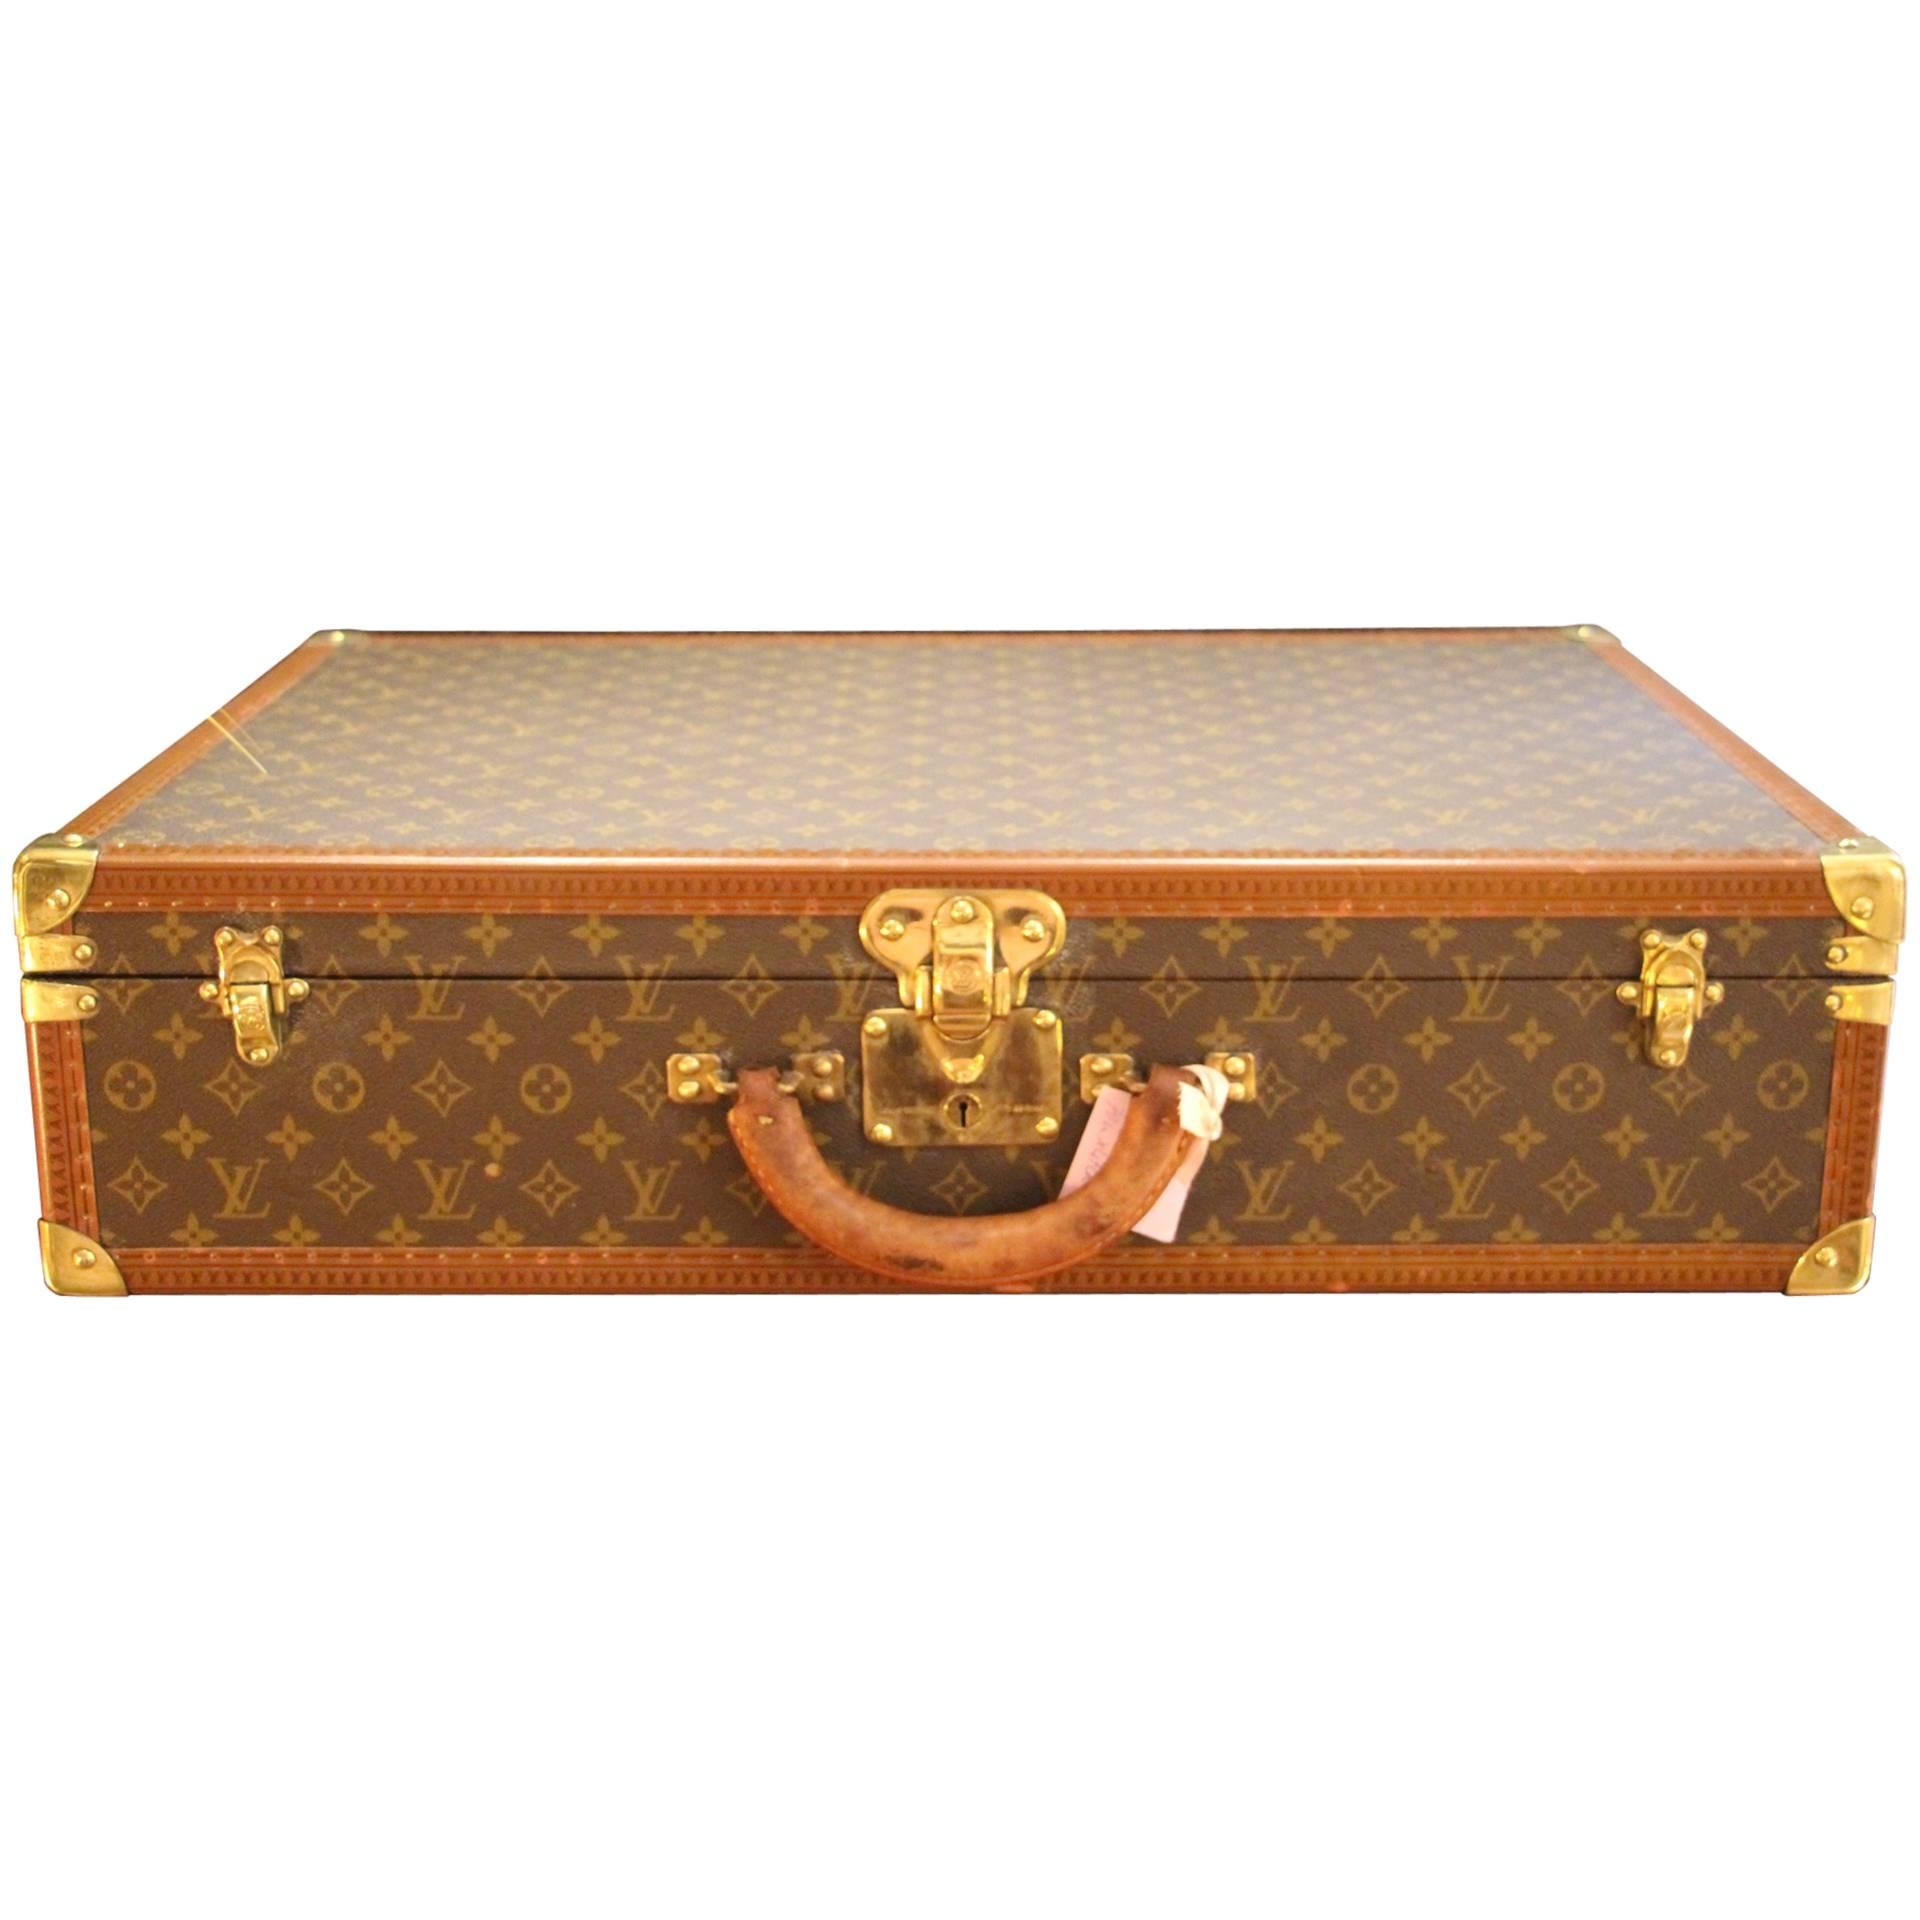 1980s Louis Vuitton Suitcase